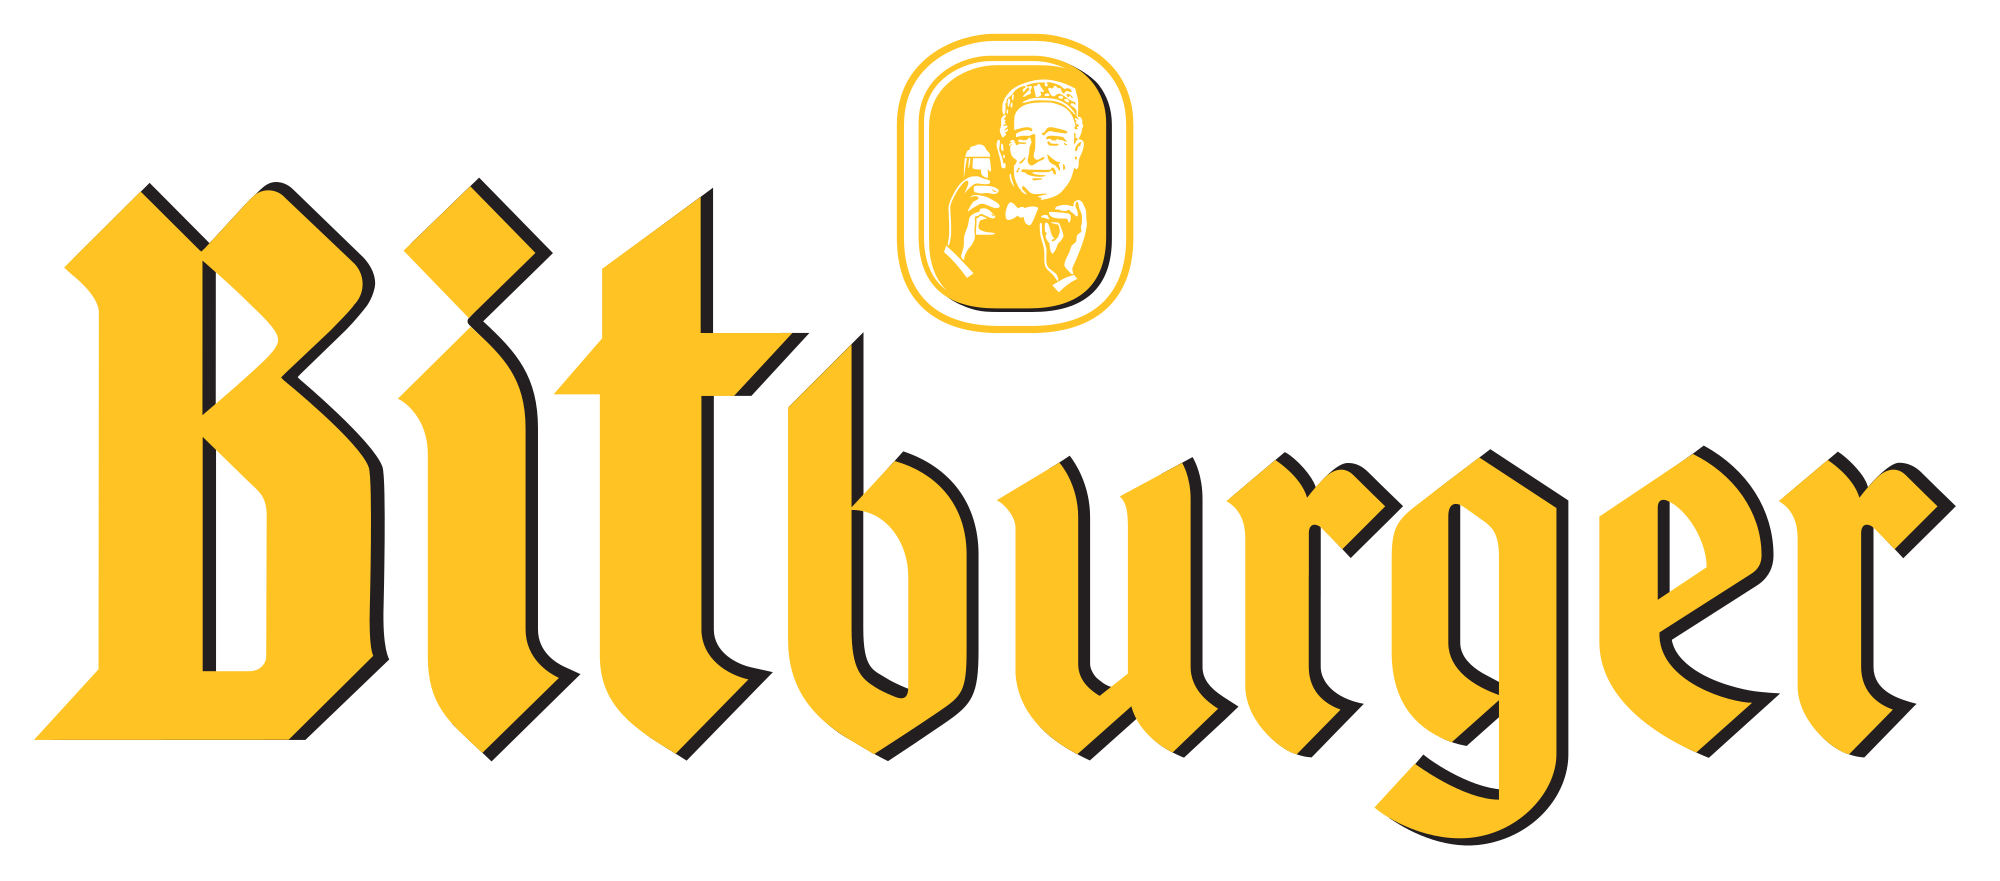 Bittburger